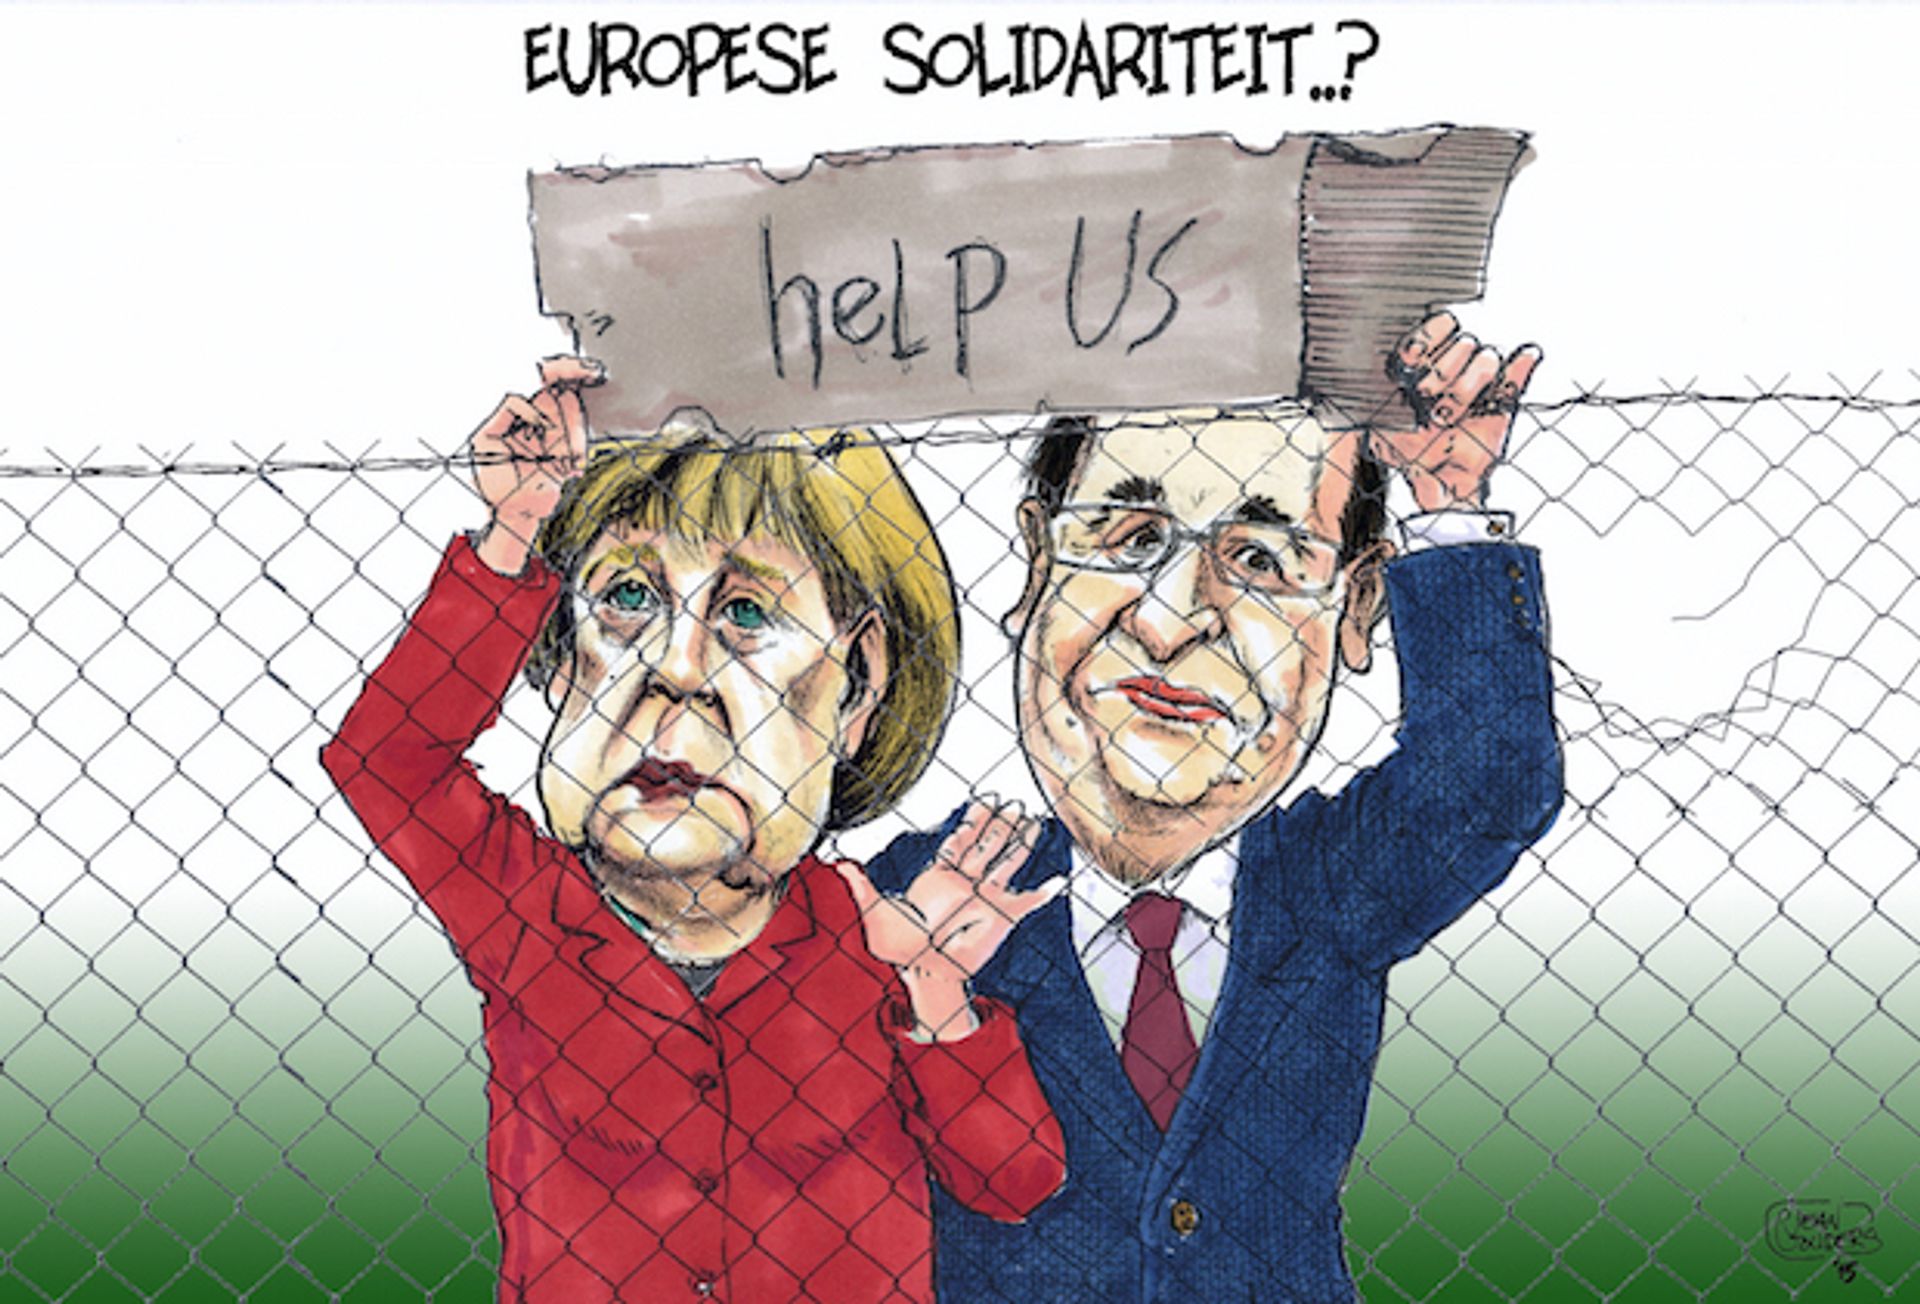 RTEmagicC_europese_solidariteit2.jpg.jpg